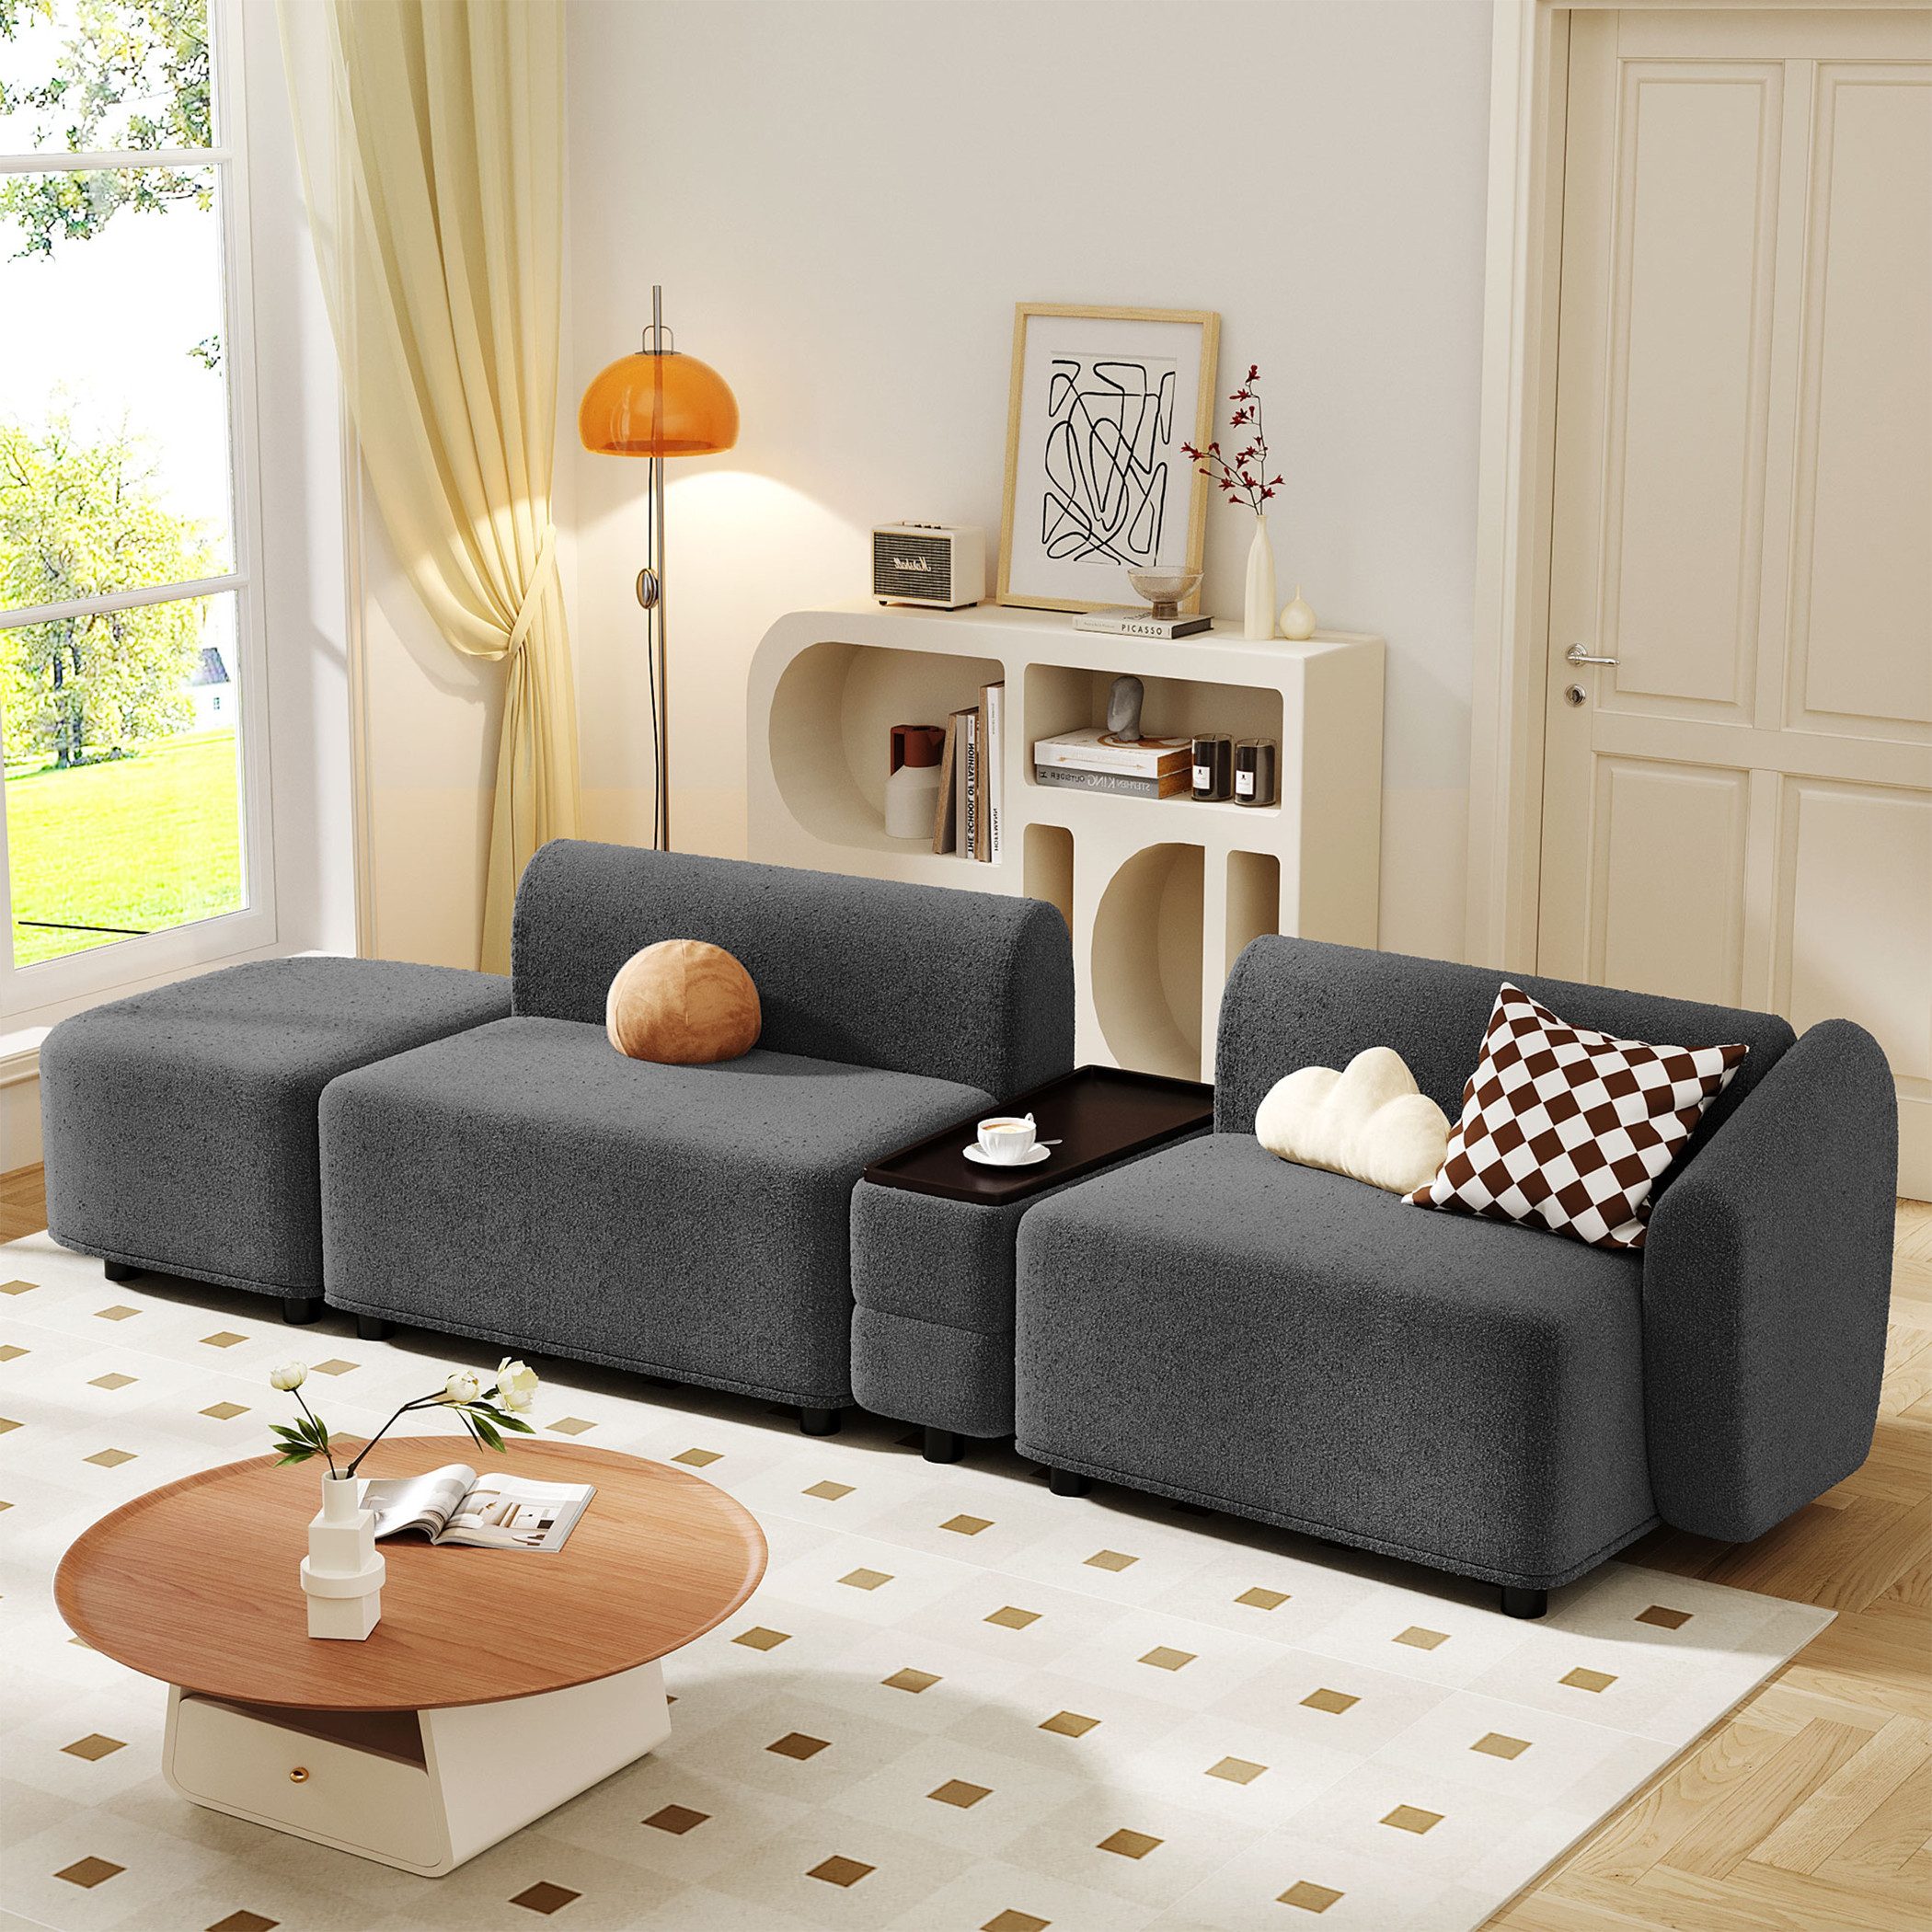 KLAM HOME Ecksofa modernes Design multifunktionales Dreisitzer-Sofa, Wohnzimmer Sofa mit Couchtisch Aufbewahrungsfunktion & Ottoman